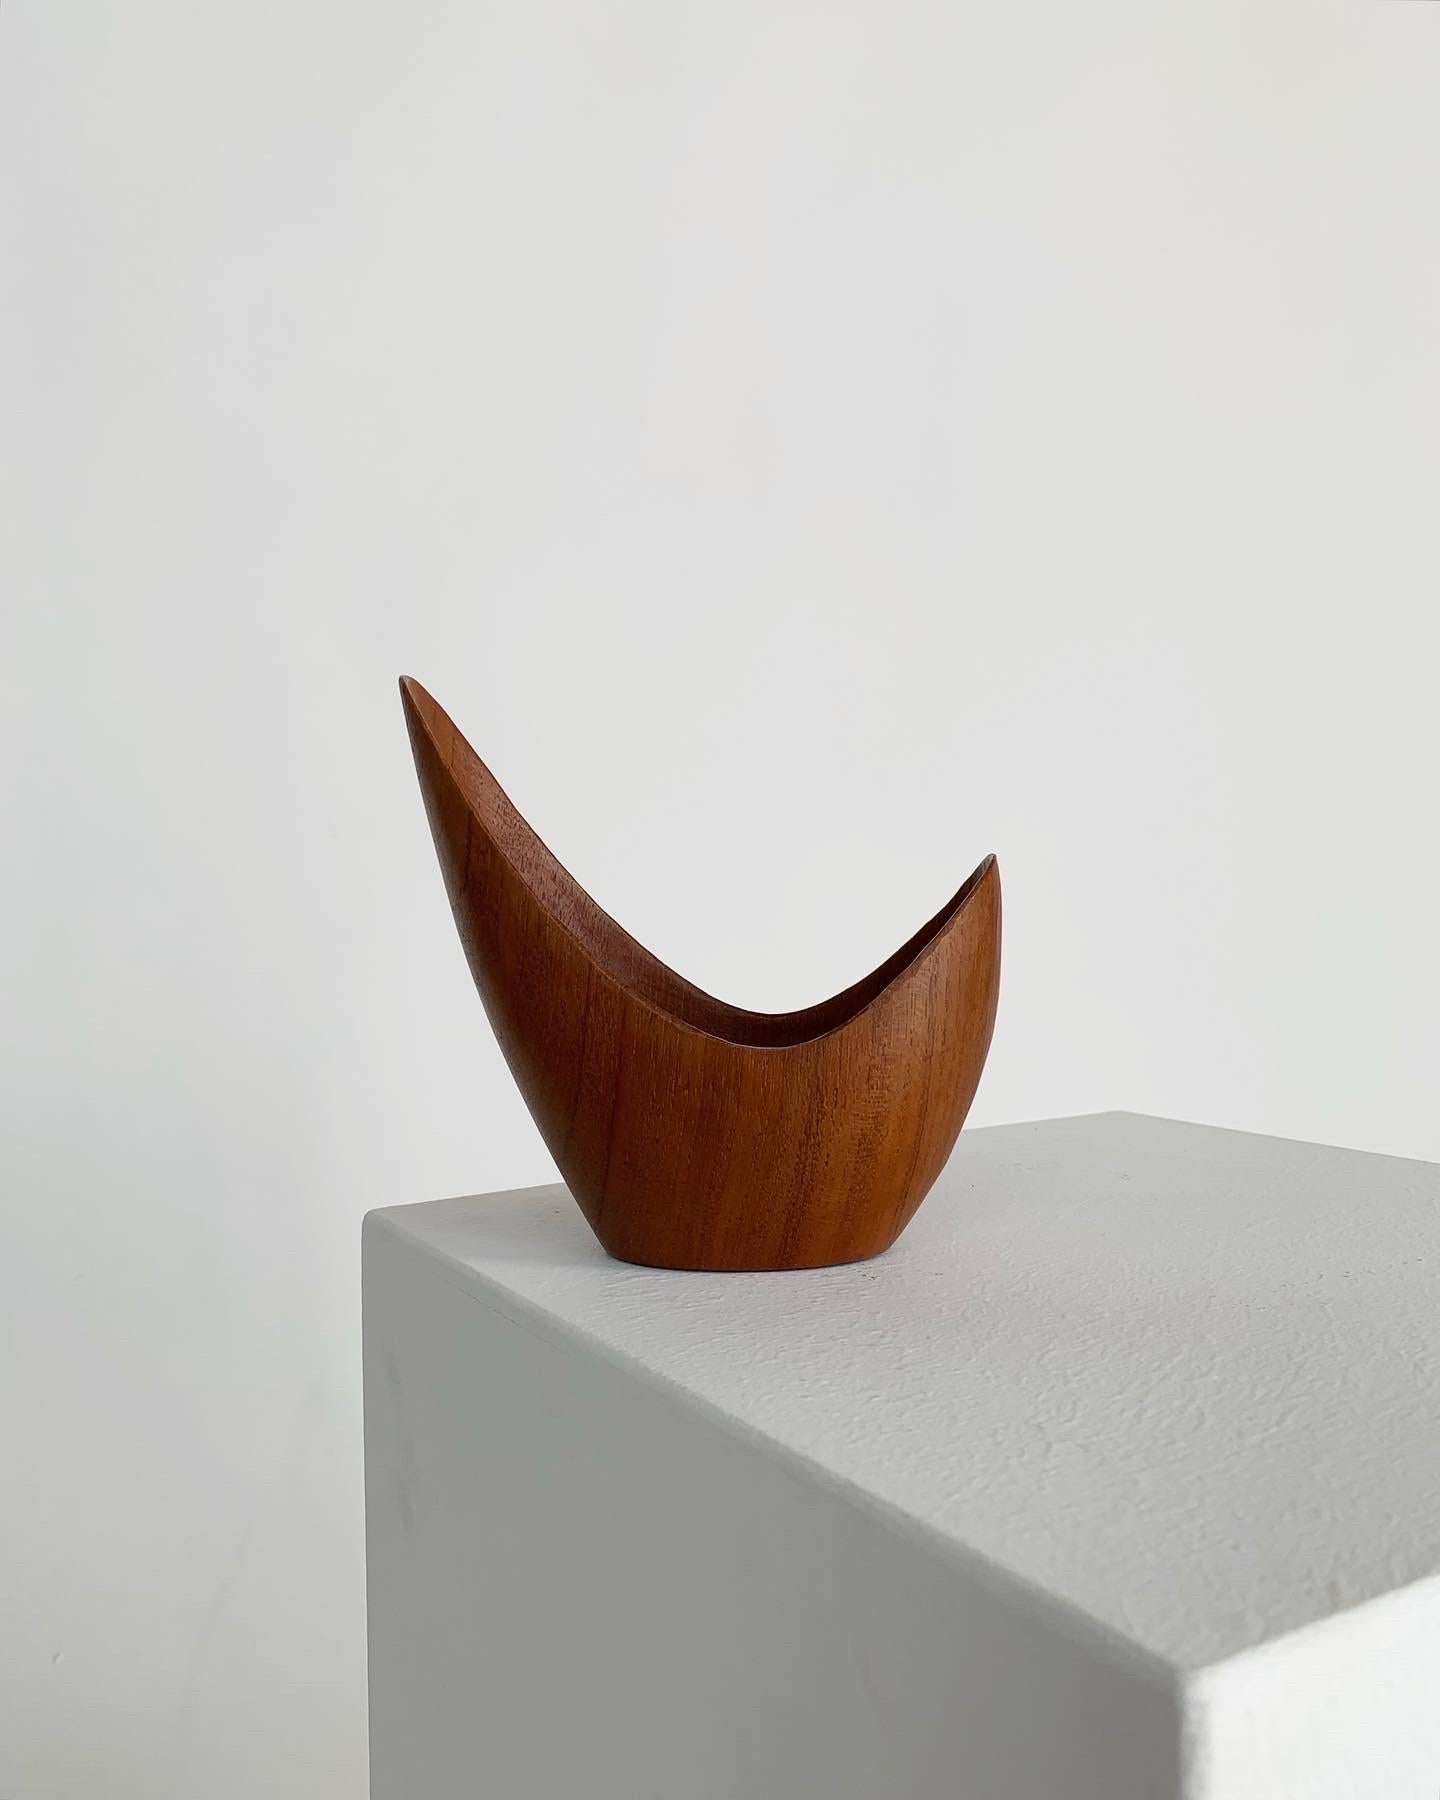 Hand-Carved Stig Sandkvist Teak Bowl Hand Carved Sweden 1950s Midcentury Design